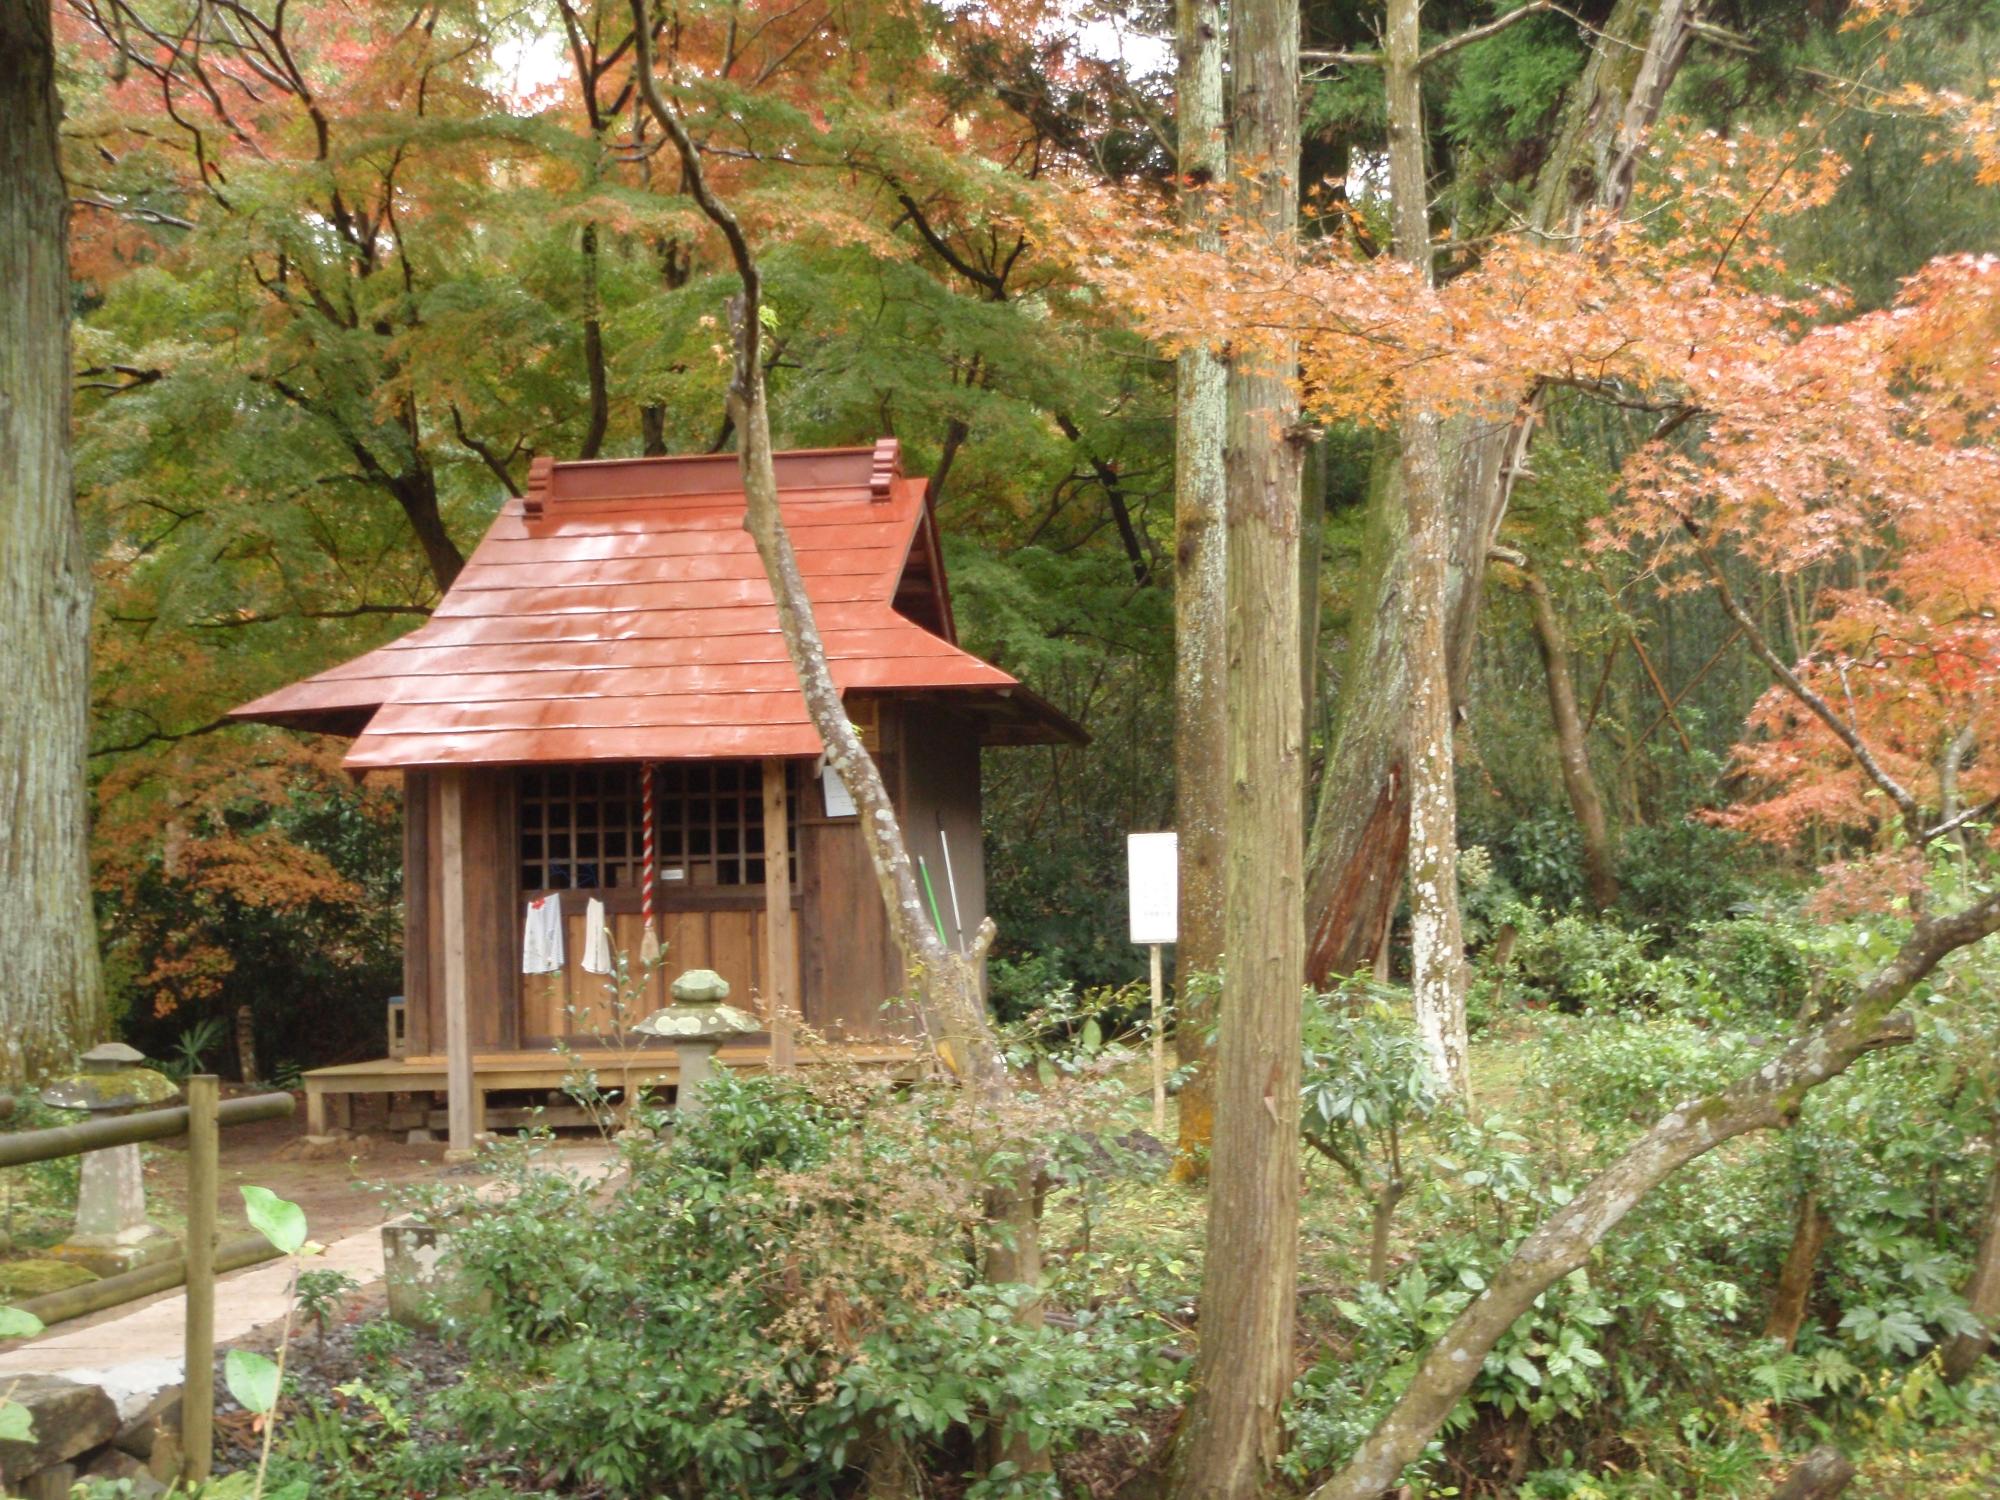 朱色の屋根の小さな祠が森の中に建っている写真